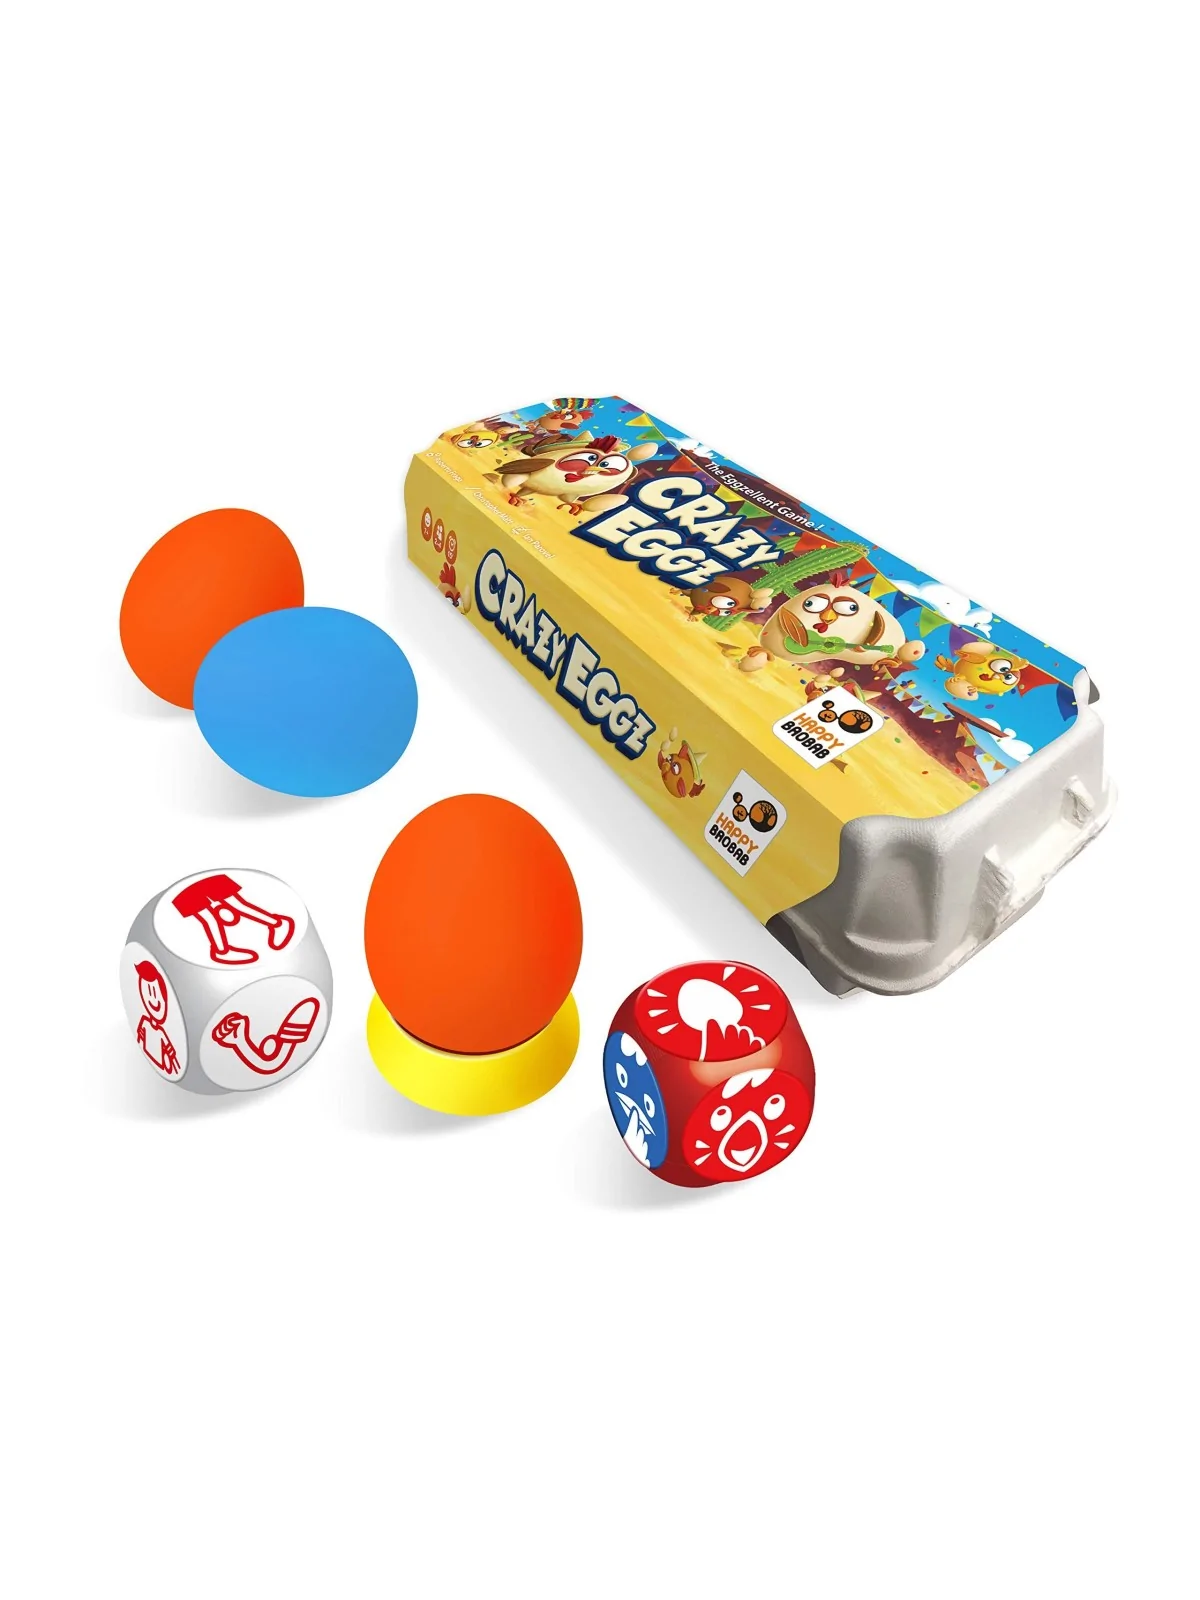 Comprar Crazy Eggz barato al mejor precio 17,05 € de Mercurio Distribu